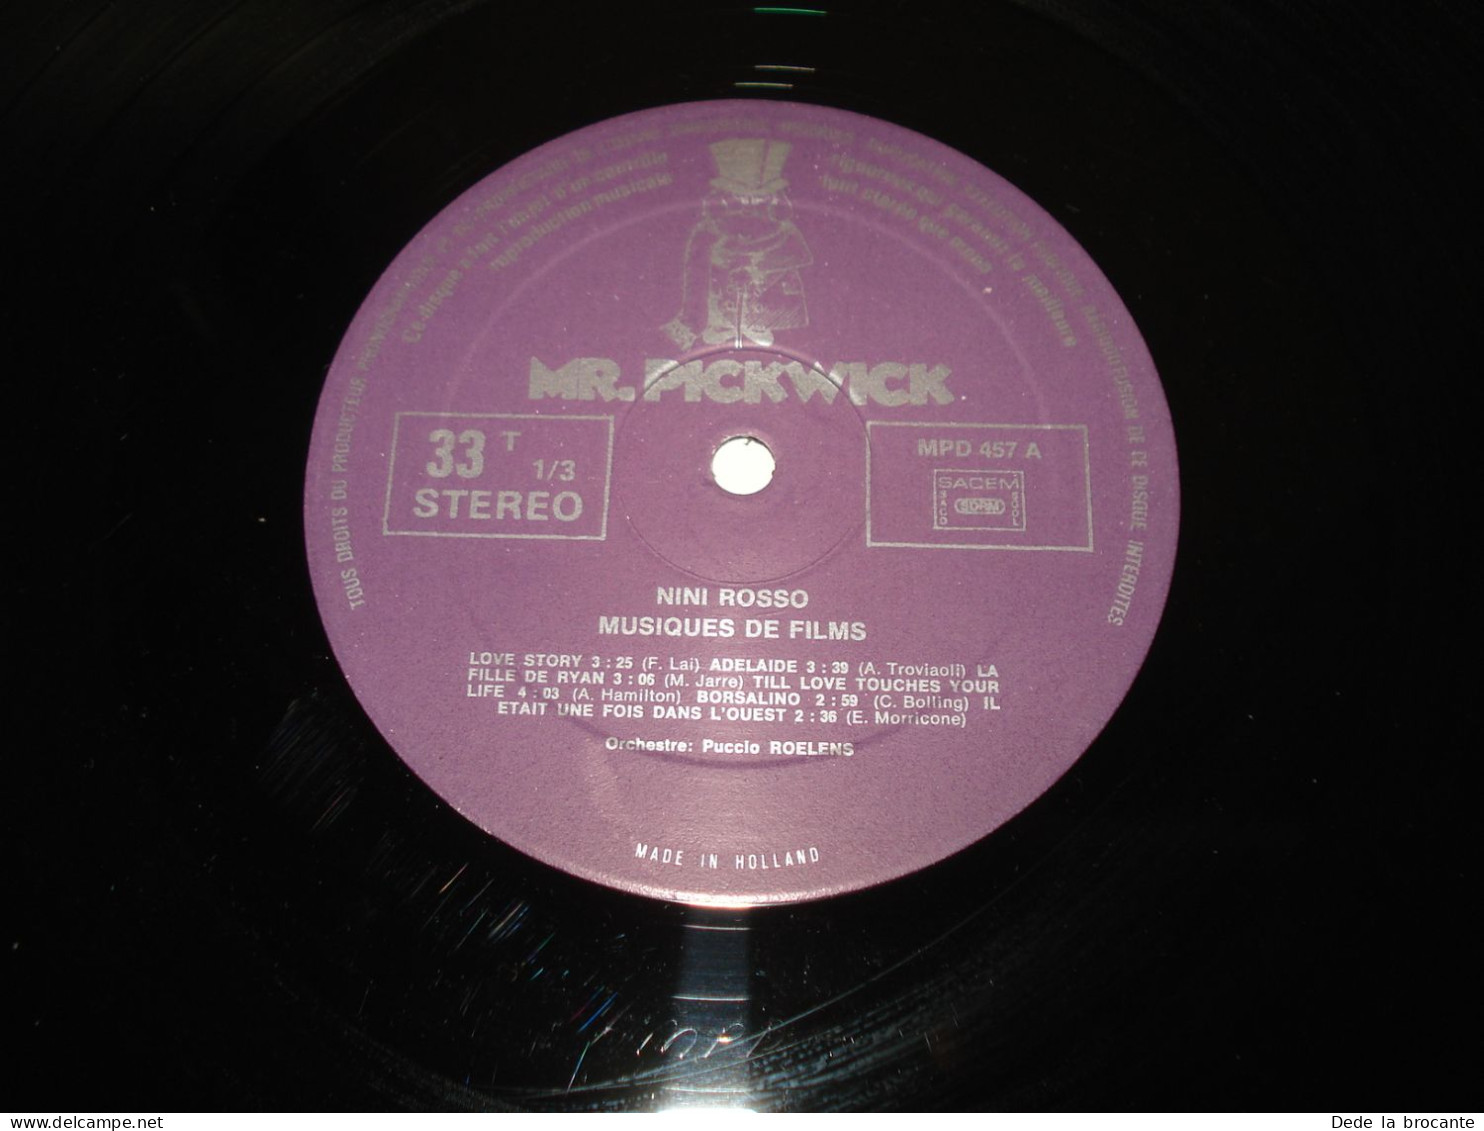 B10 / Nini Rosso – Musiques De Films - LP - MPD 457 - France  1974 - M/EX - Música De Peliculas